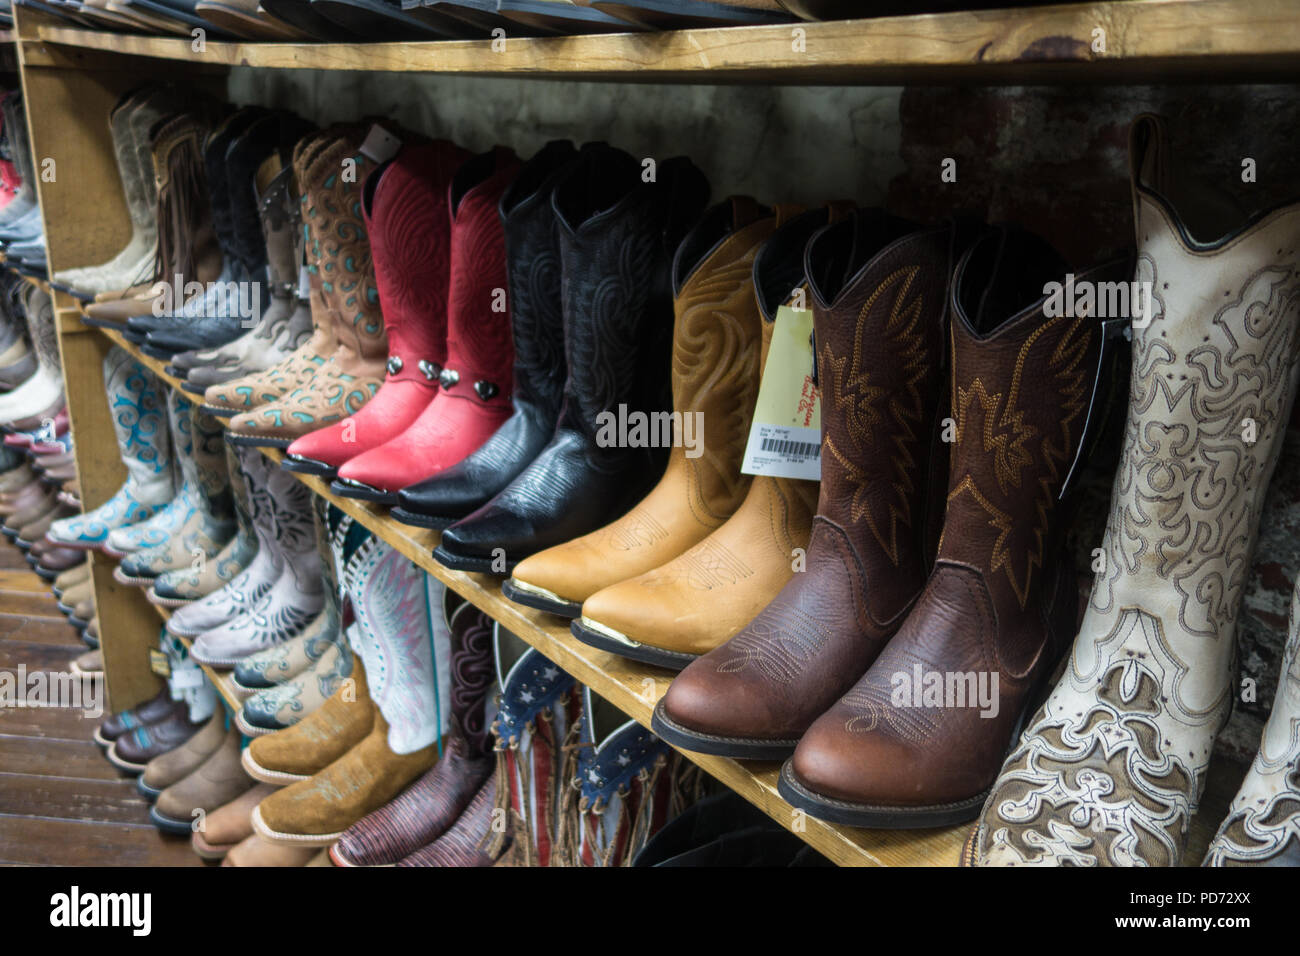 Filas de botas de vaquero para la venta en una tienda de arranque en Nashville, TN, EE.UU Fotografía de stock Alamy